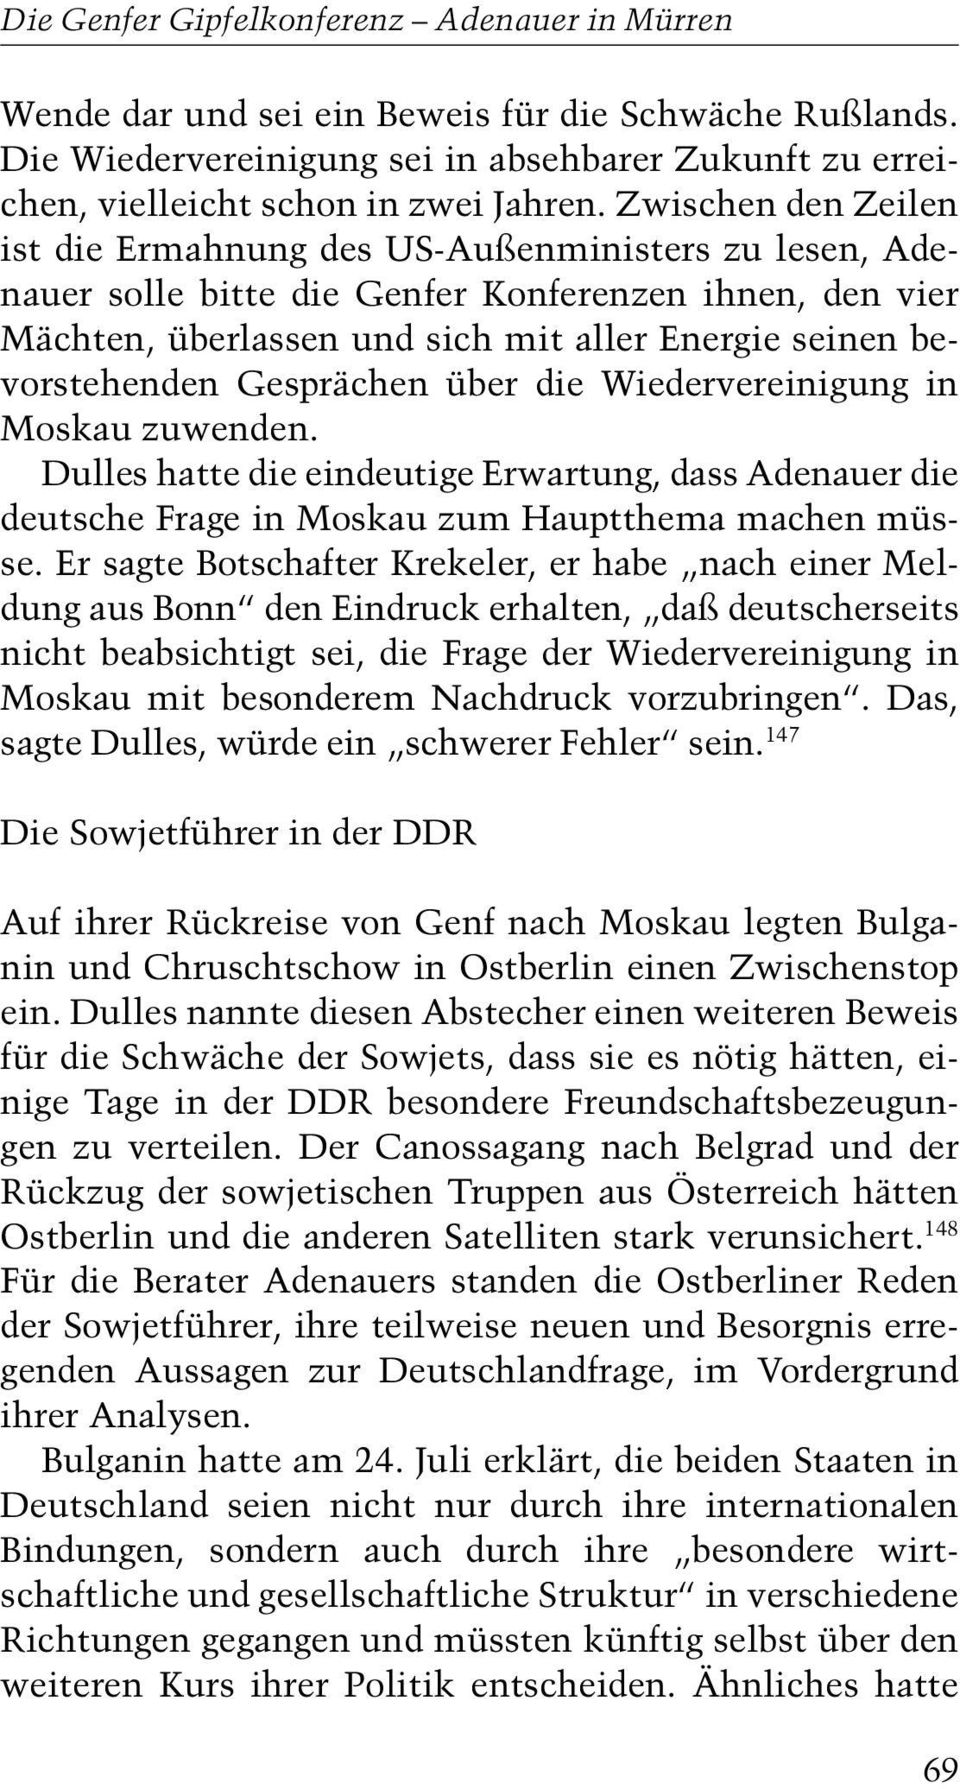 Gesprächen über die Wiedervereinigung in Moskau zuwenden. Dulles hatte die eindeutige Erwartung, dass Adenauer die deutsche Frage in Moskau zum Hauptthema machen müsse.